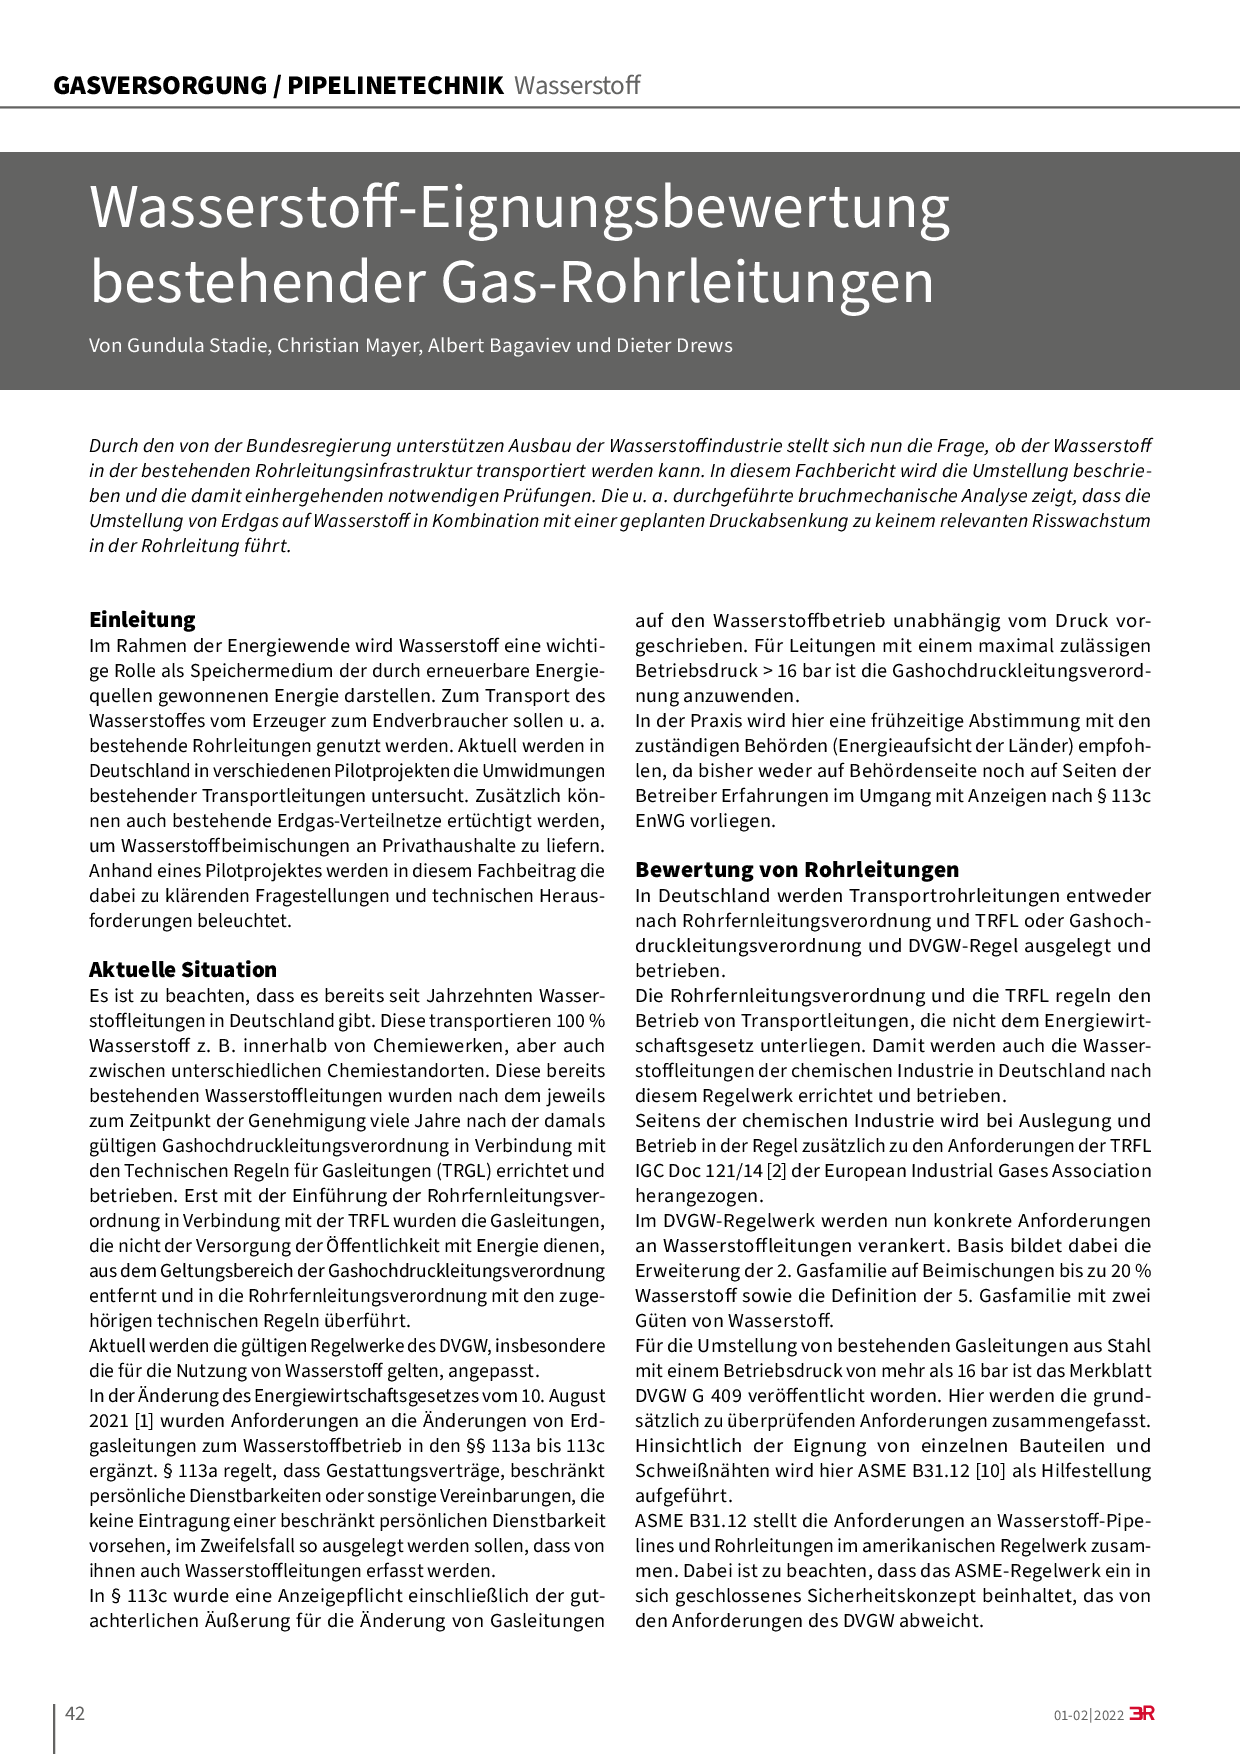 Wasserstoff-Eignungsbewertung bestehender Gas-Rohrleitungen